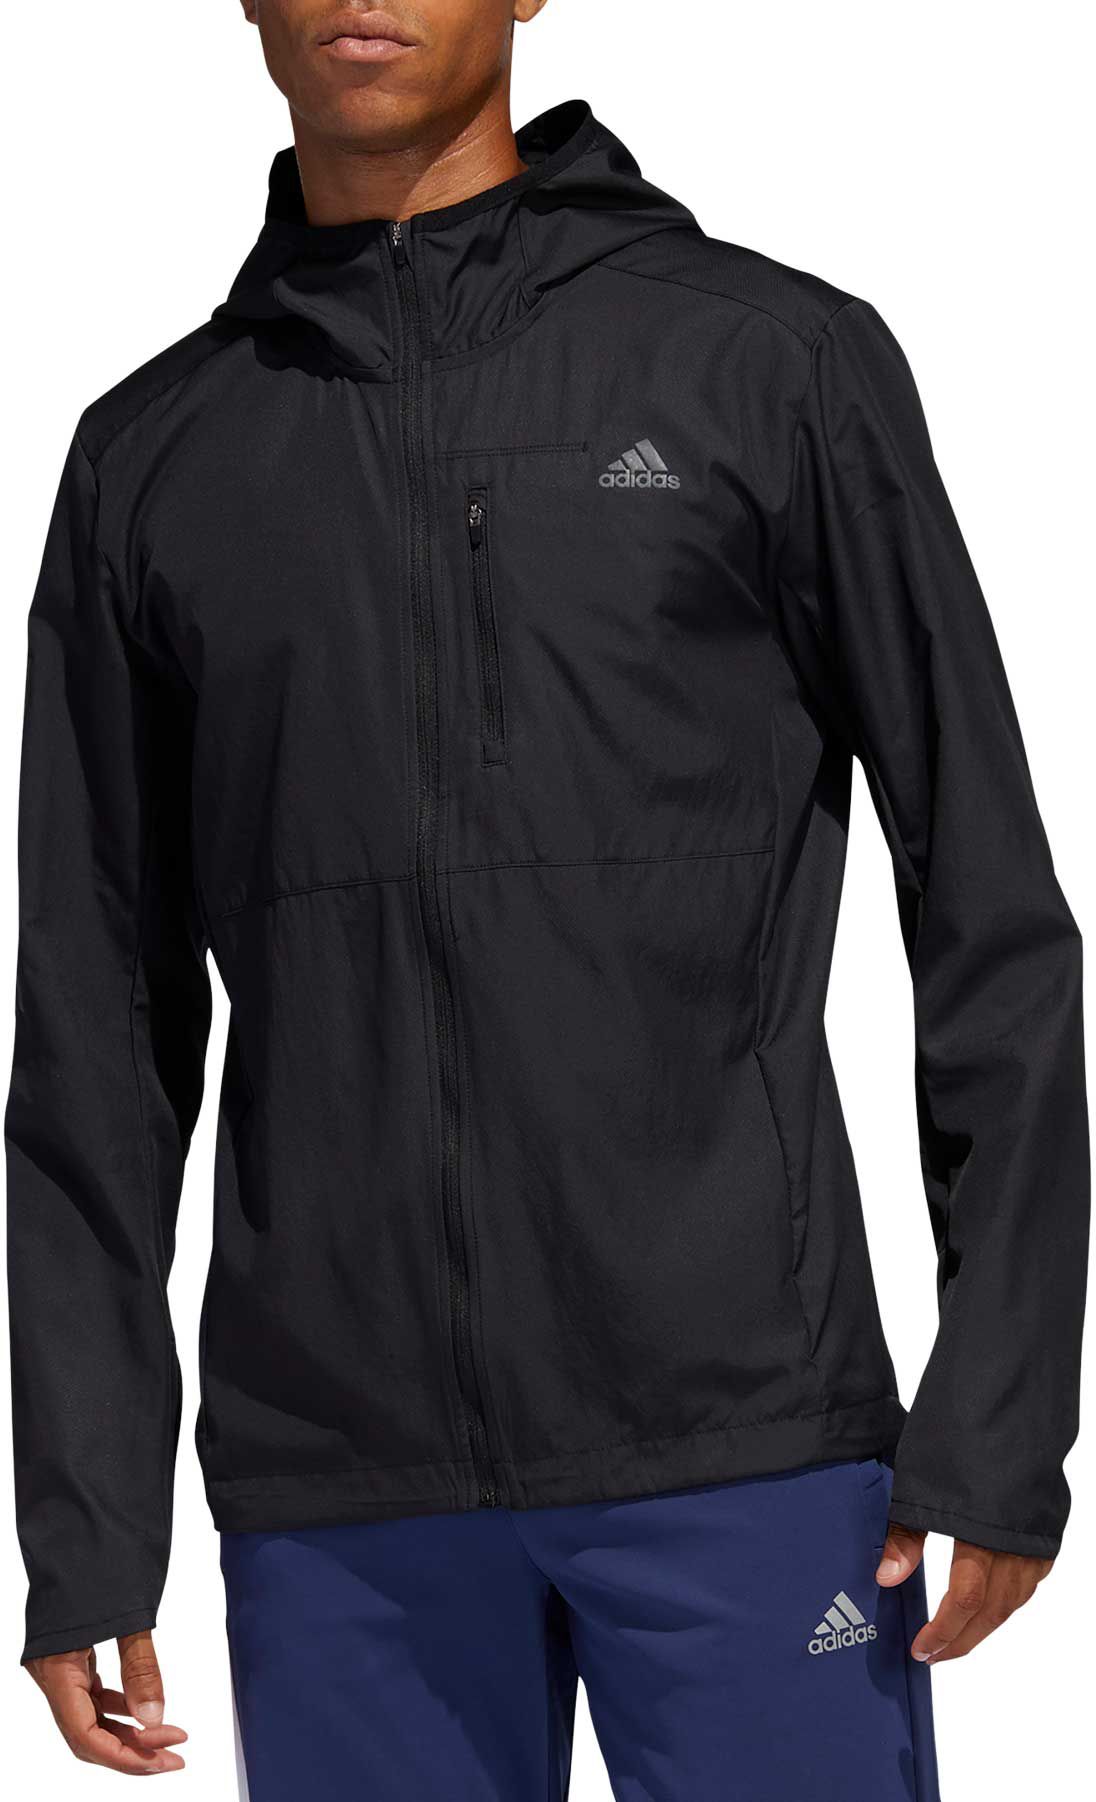 Adidas / Men's On the Run Hooded Wind Jacket